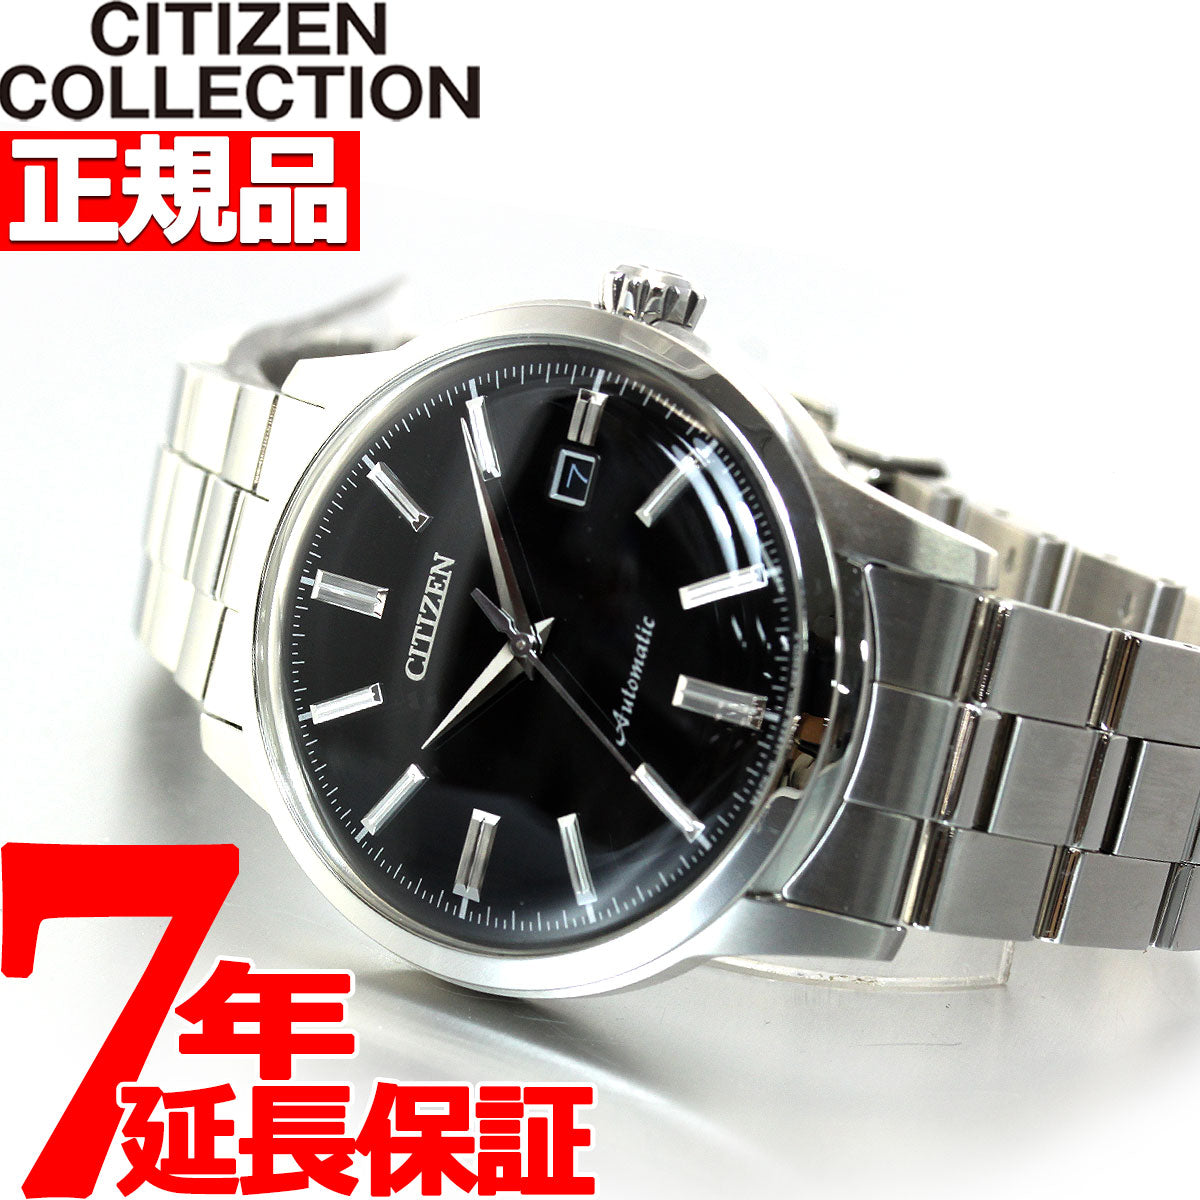 シチズンコレクション CITIZEN COLLECTION メカニカル 自動巻き 機械式 腕時計 メンズ クラシカルライン NK0000-95E